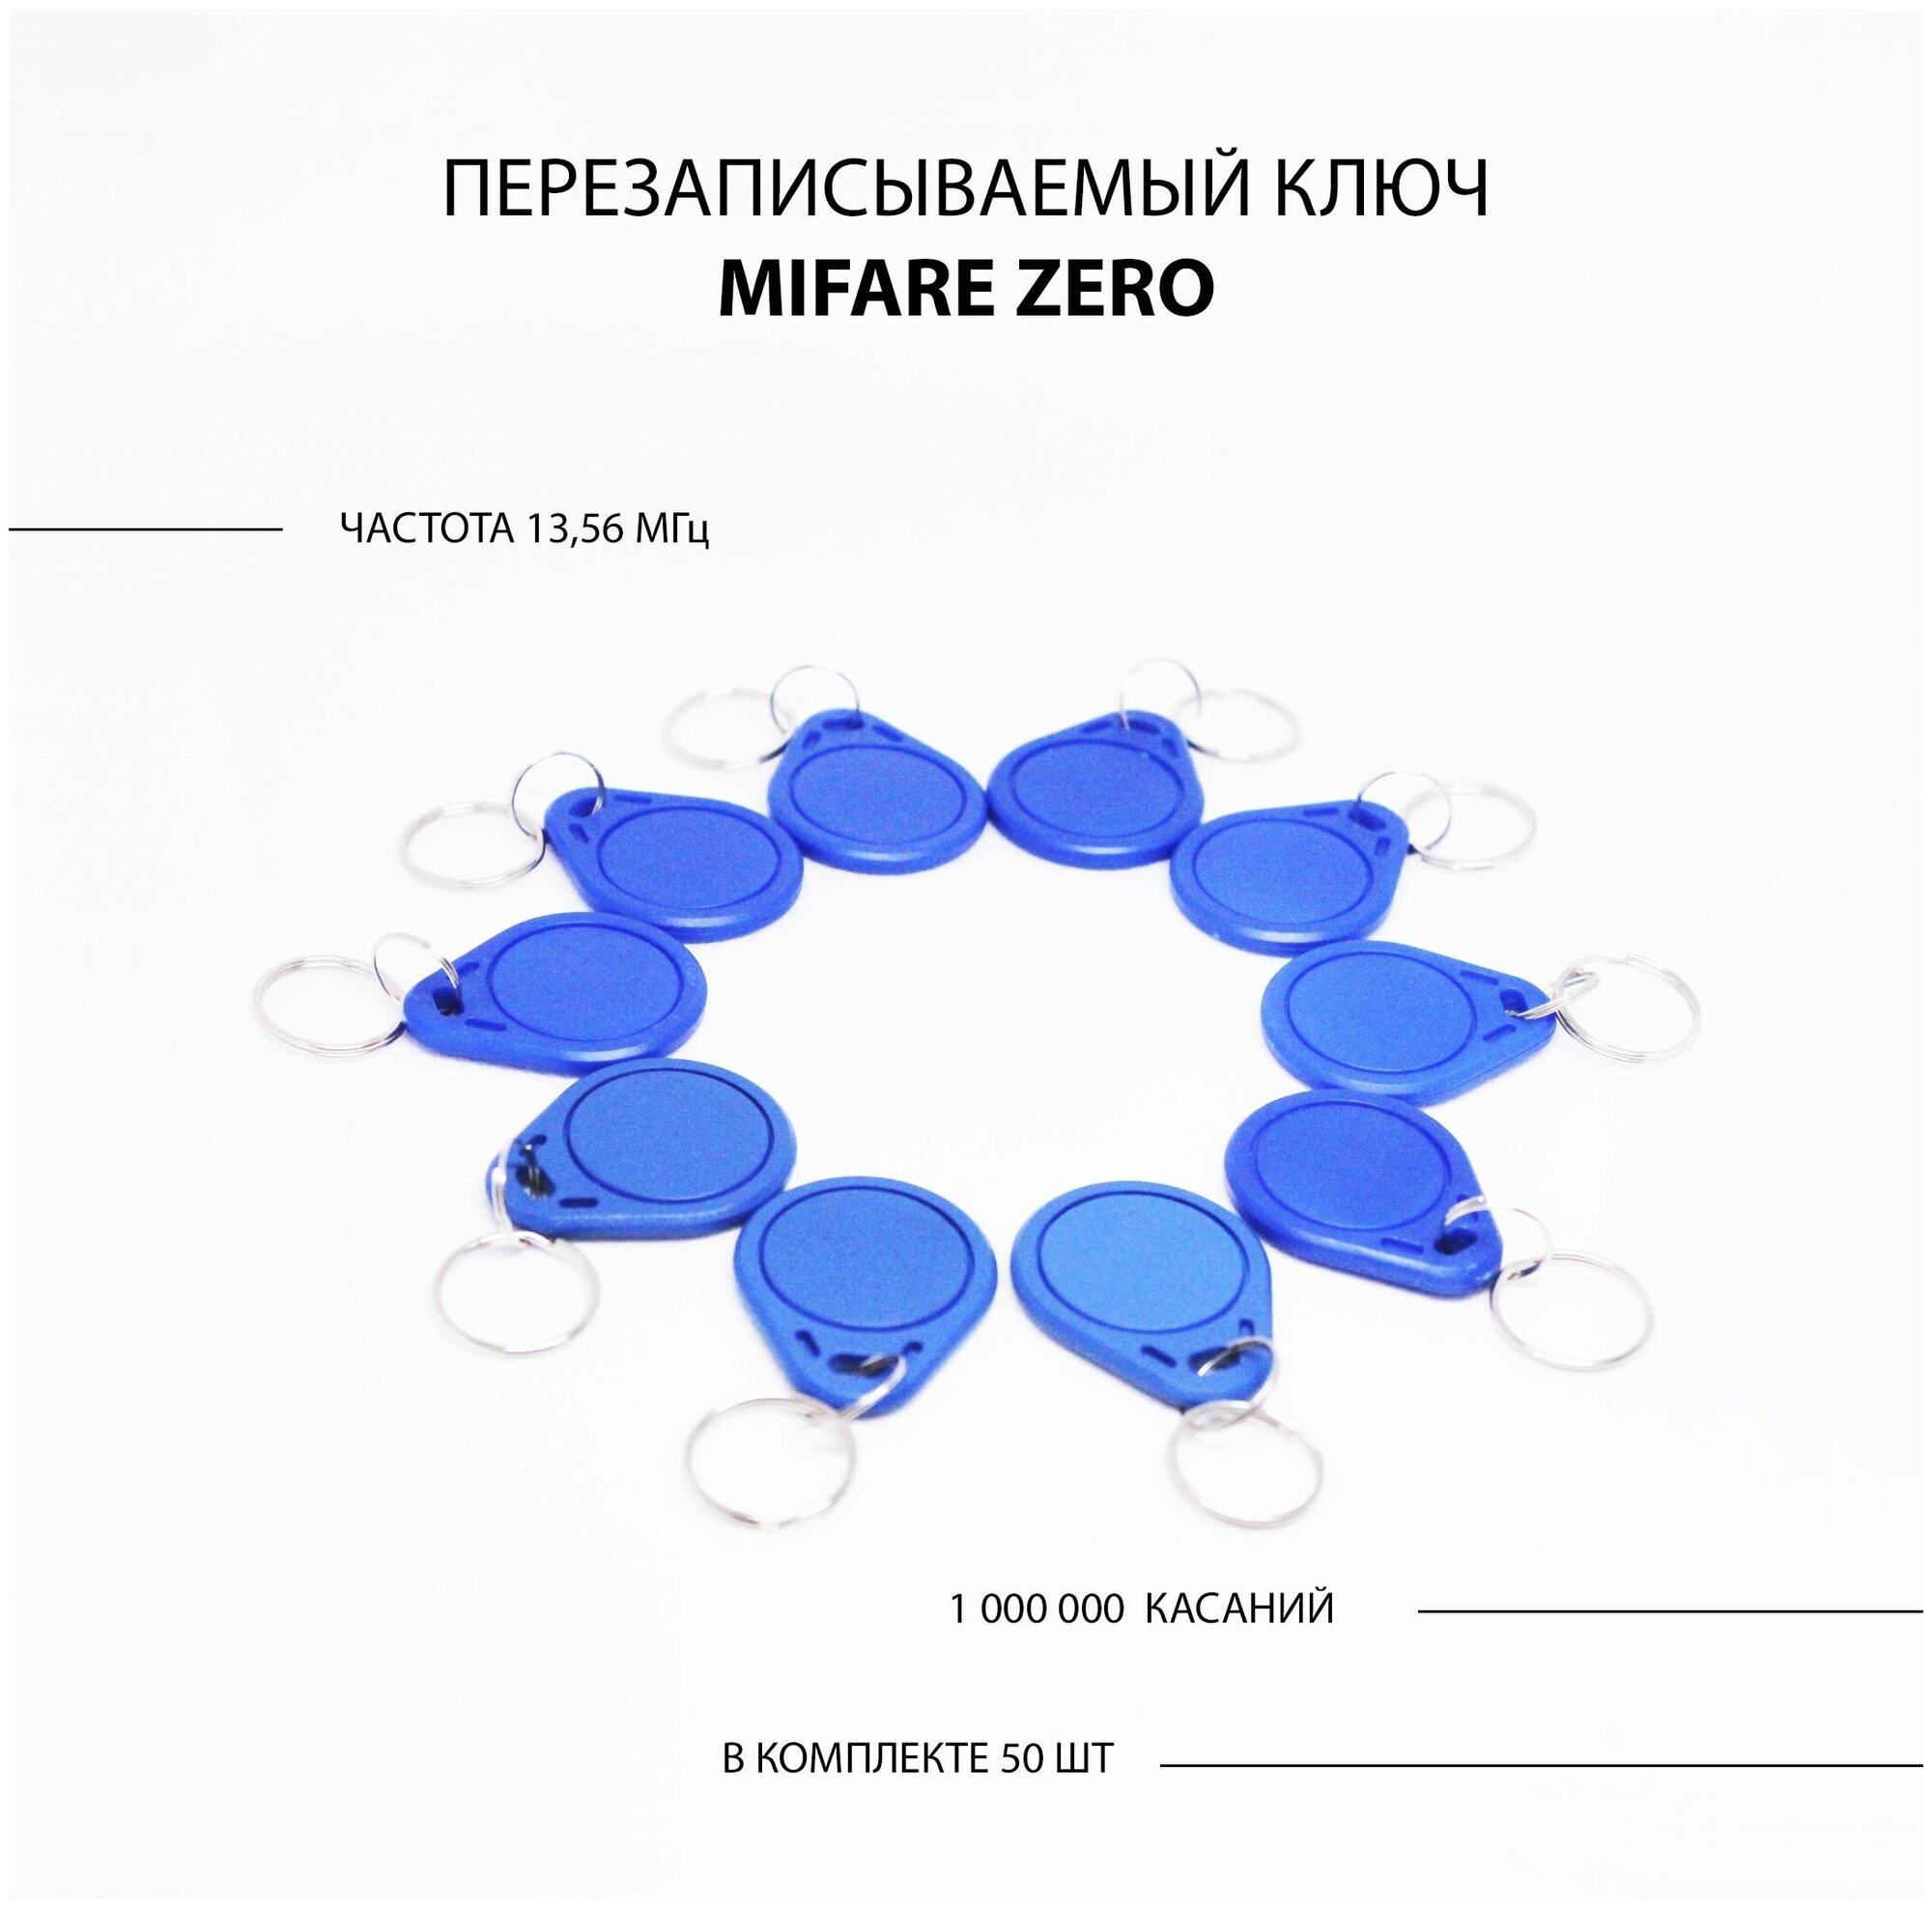 Ключ для домофона Mifare Zero 50шт перезаписываемый . Частота 13,56 МГц Цвет синий